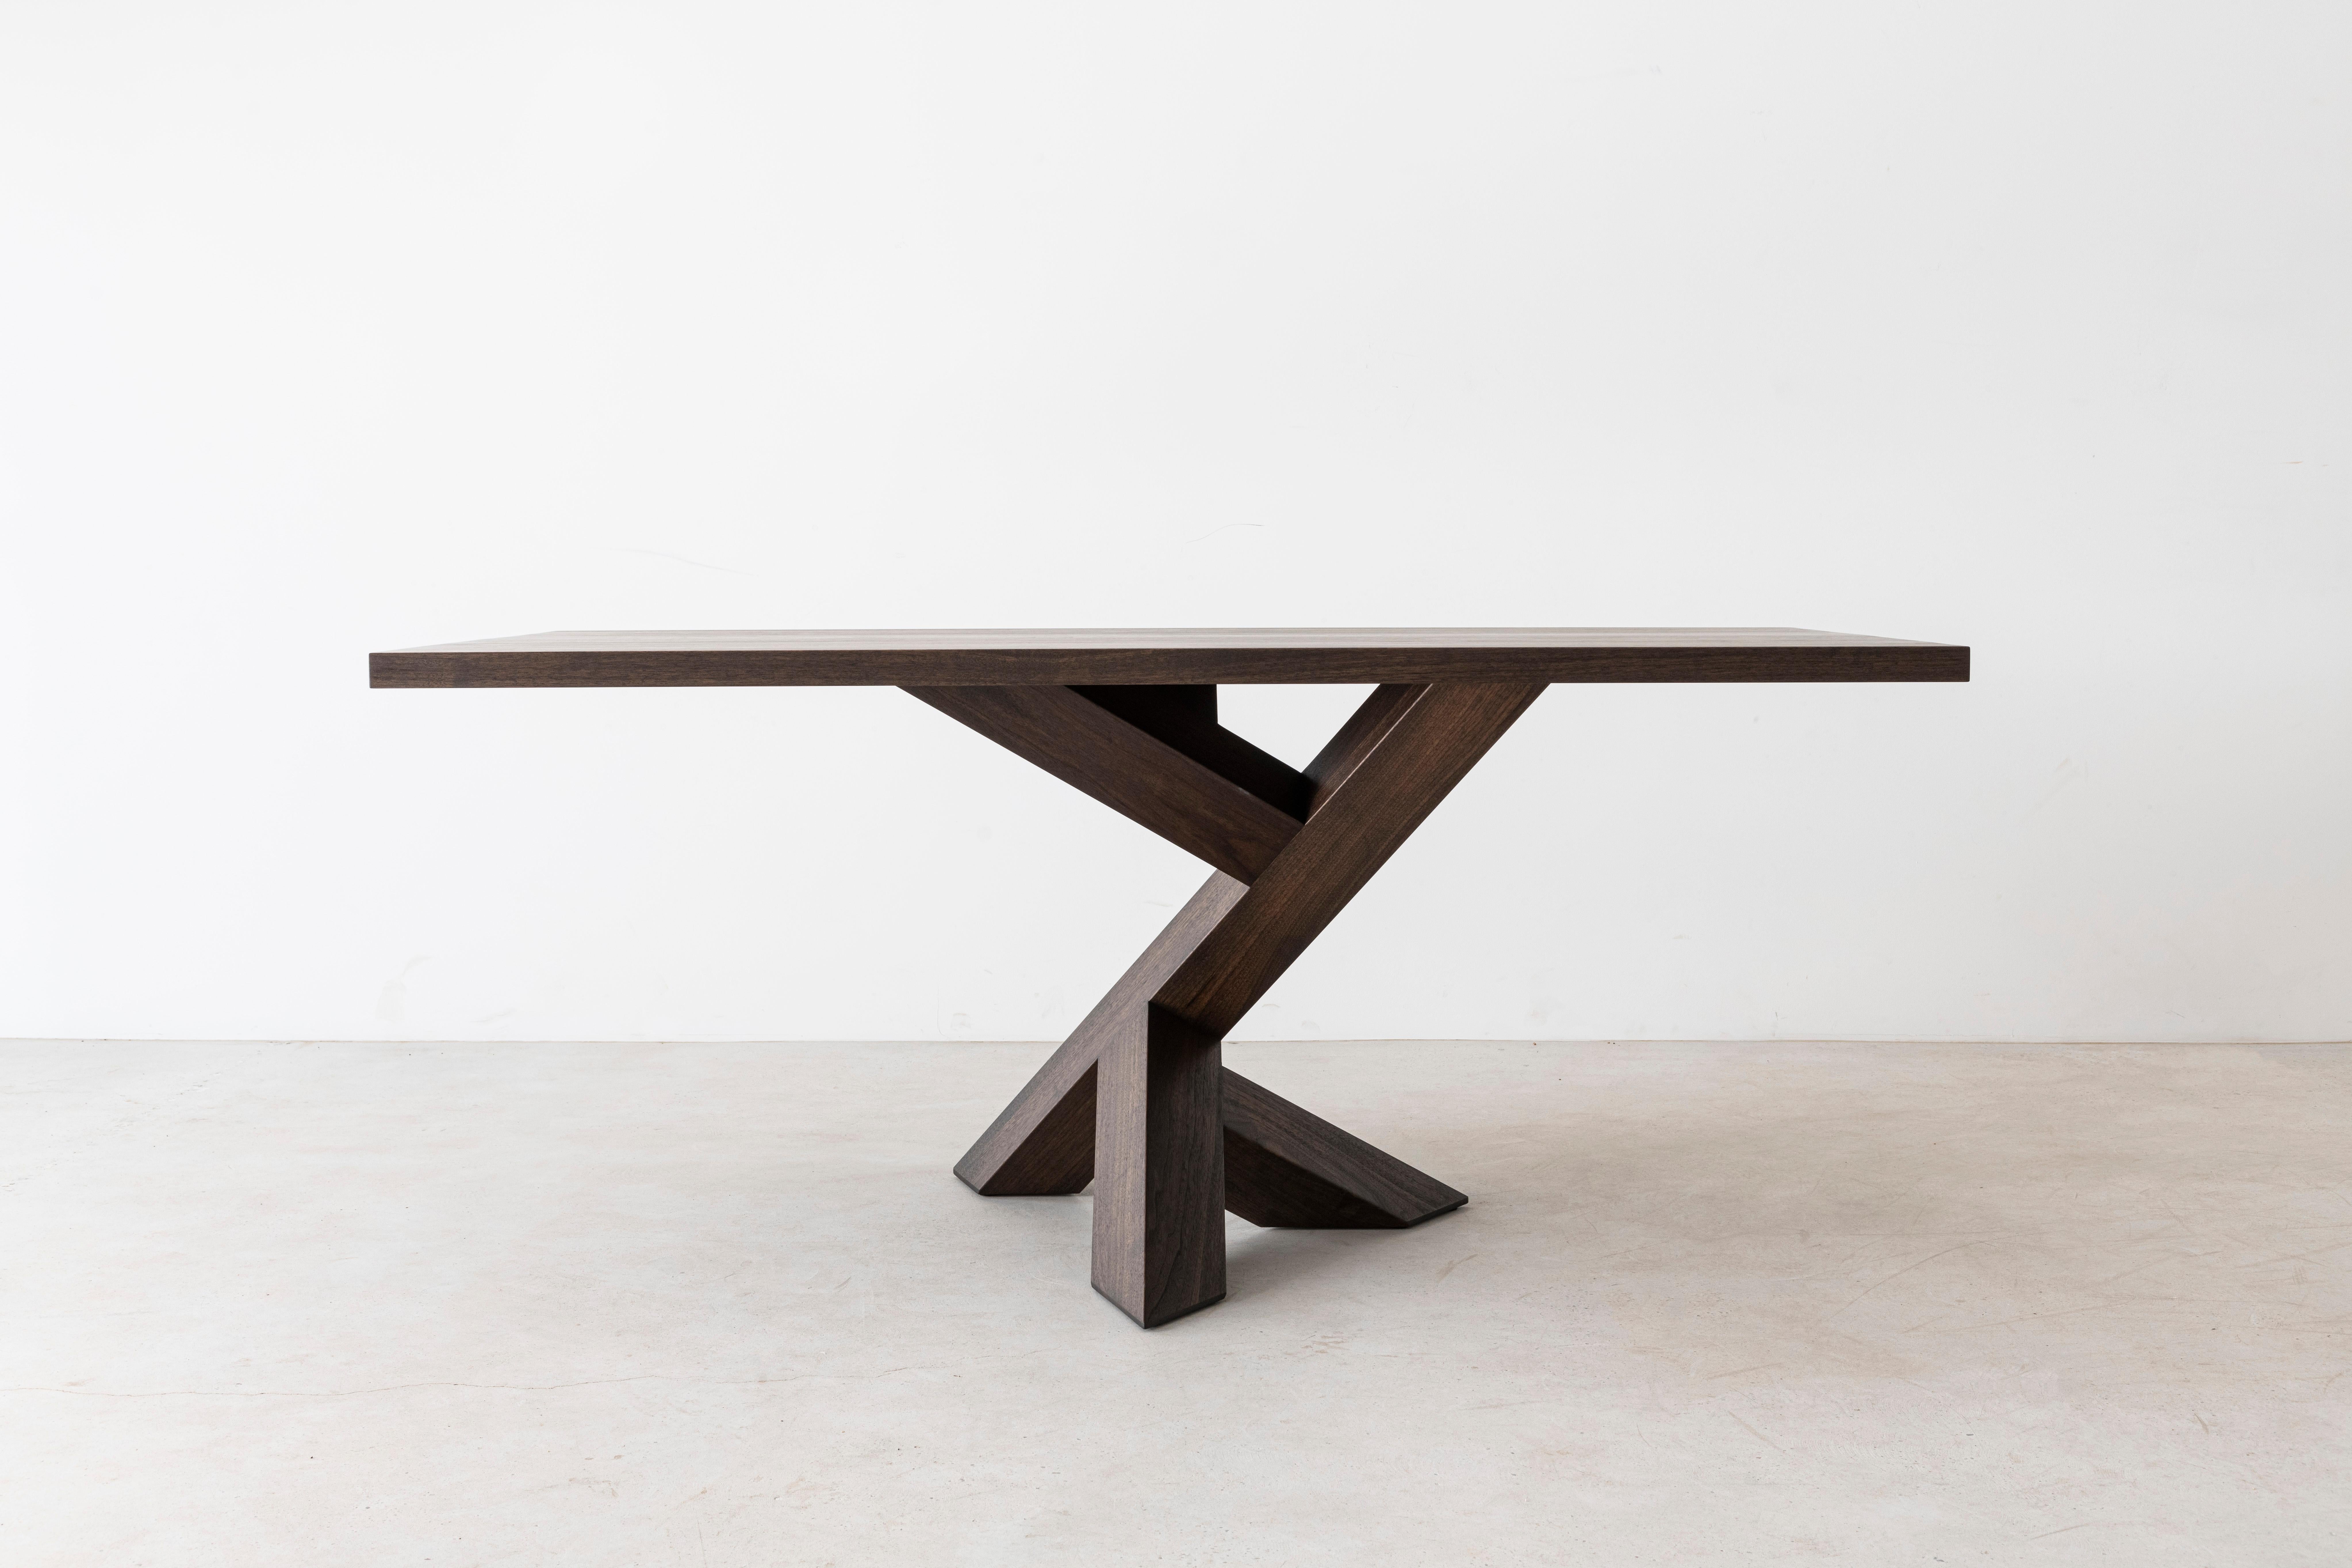 Dieser ikonische Esstisch mit Sockel kann rechteckig oder rund sein und besteht zu 100 % aus massivem Hartholz. Der eckige Sockel ermöglicht eine Vielzahl von Stuhlpositionen und bietet gleichzeitig maximale Stabilität. Kann bis zu 60